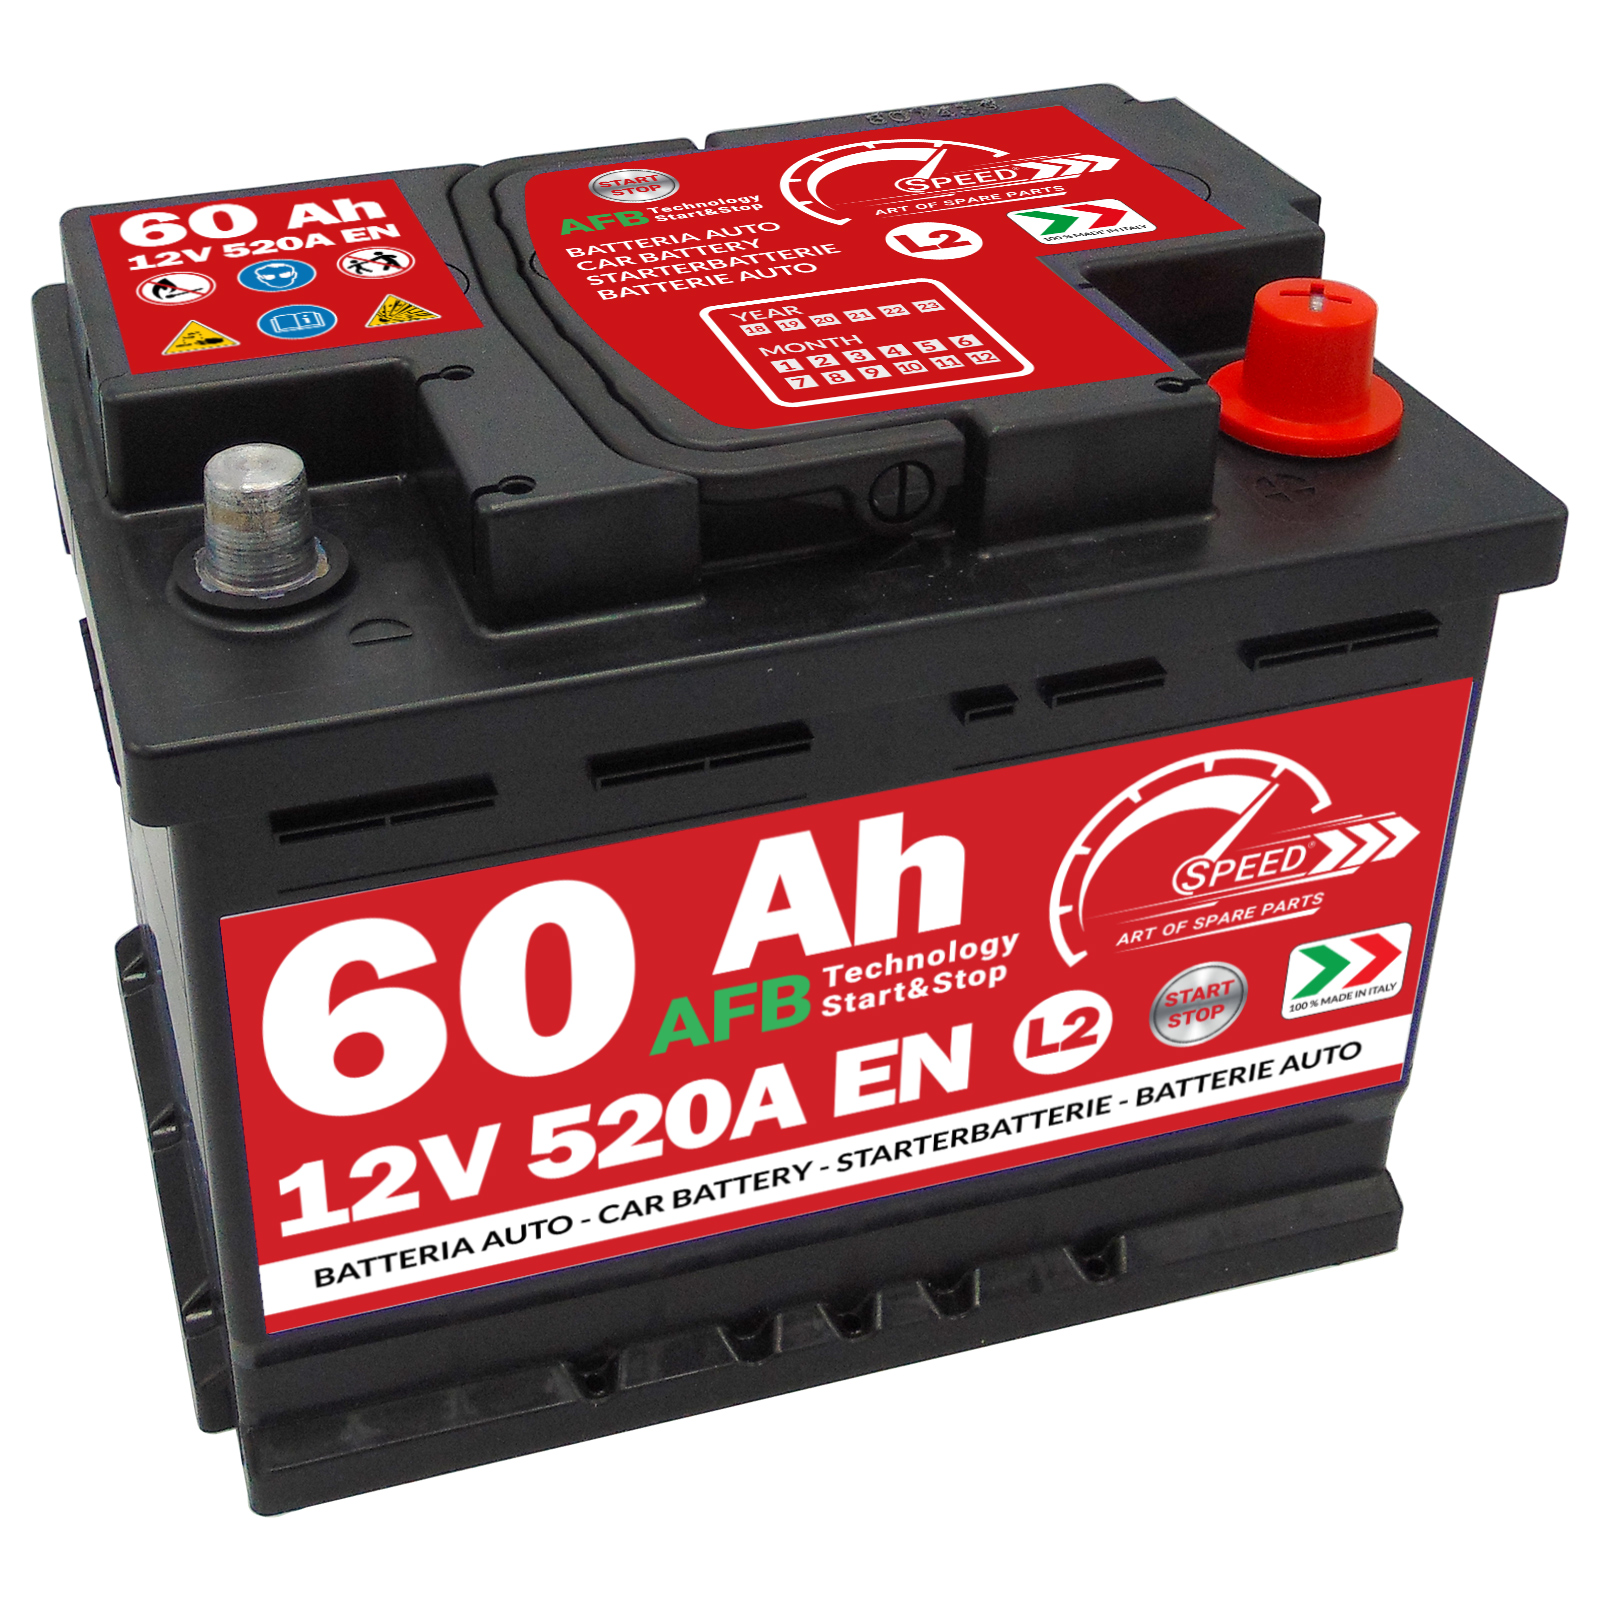 Batteria Auto Speed L2 60Ah 520A 12V AFB Start & Stop = Fiamm TR520 Exide  EL600